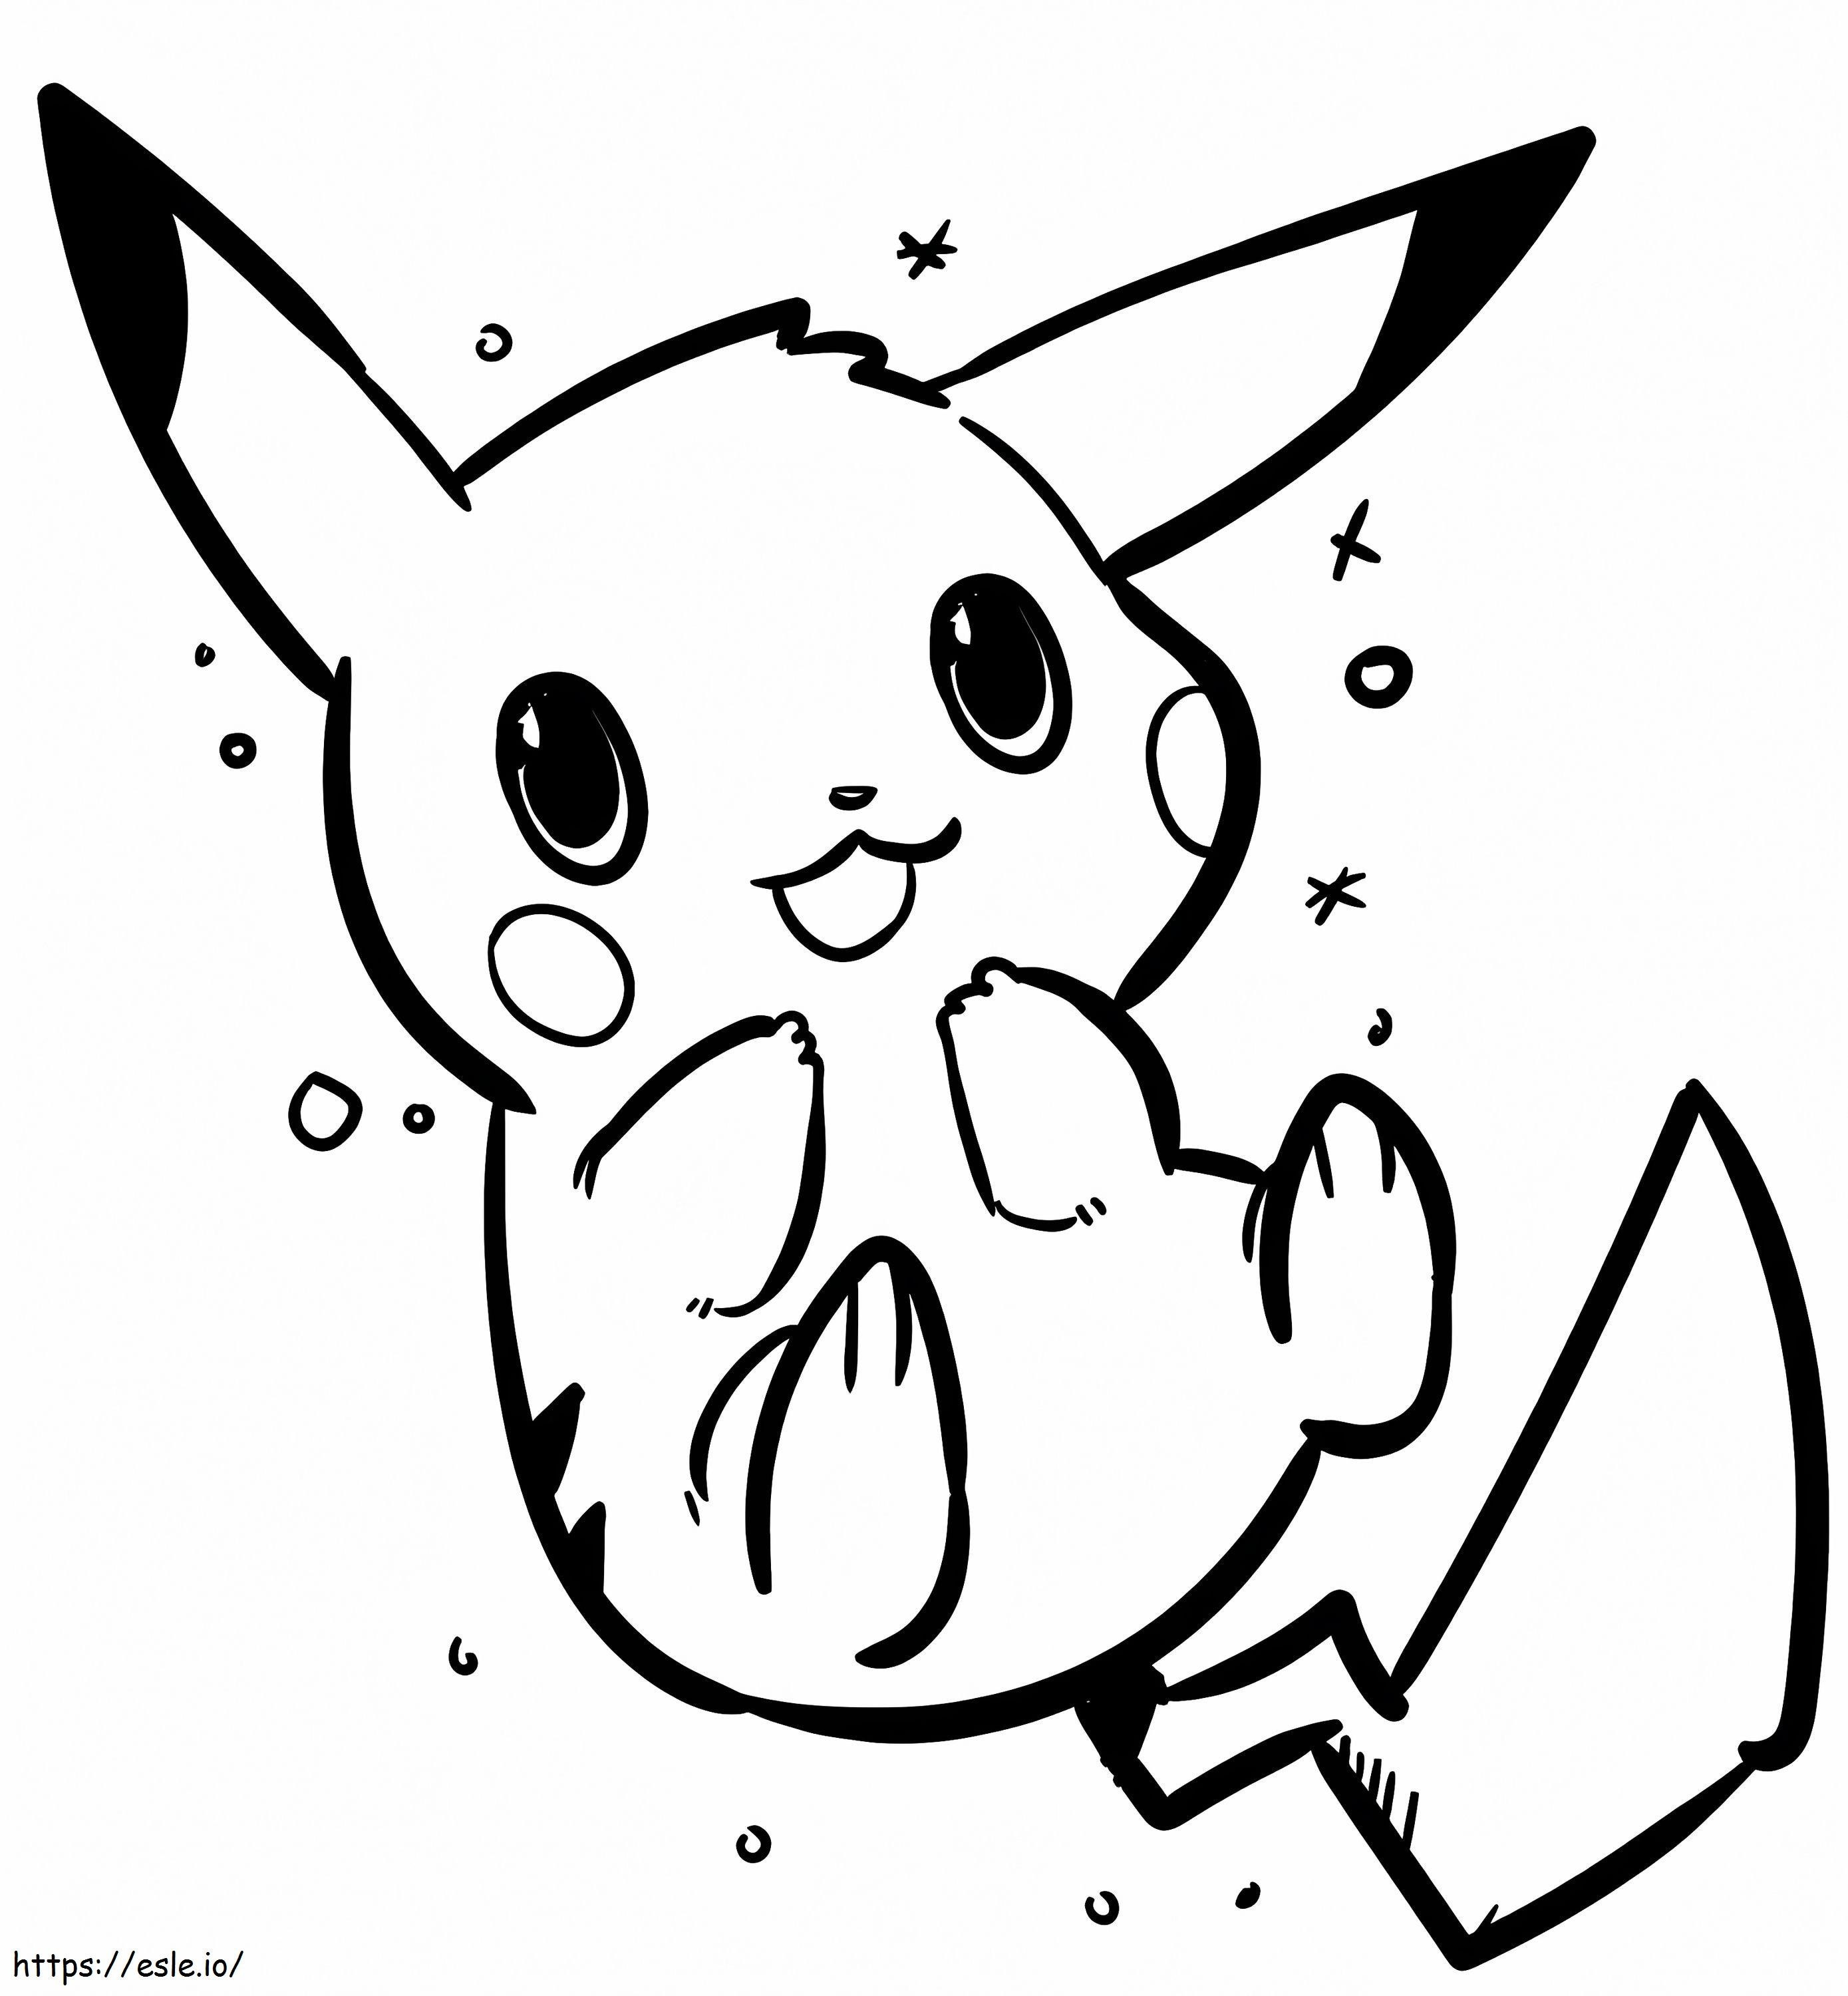 Coloriage Bébé Pikachu à imprimer dessin